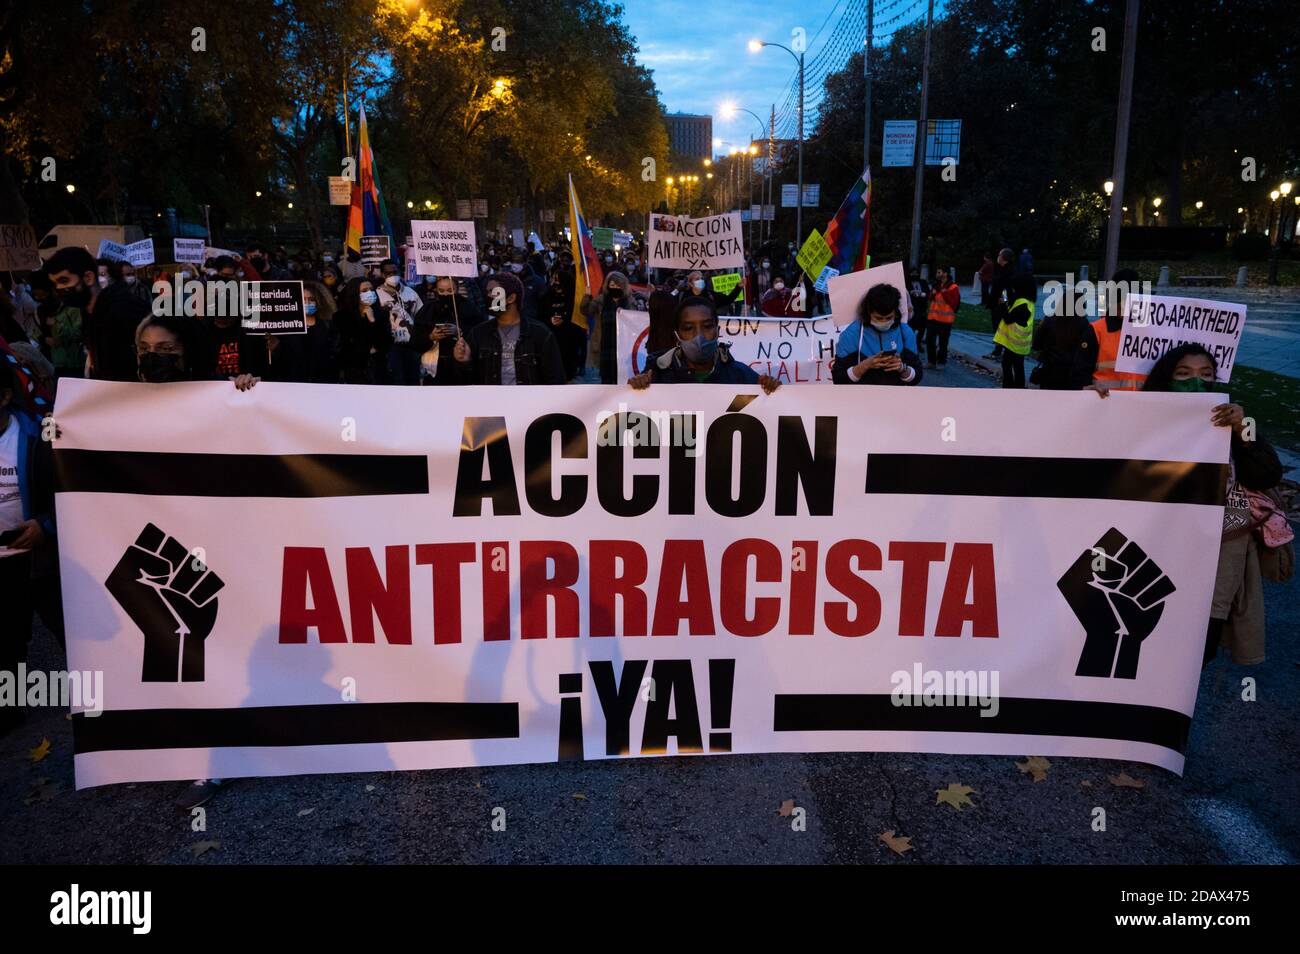 Madrid, España. 15 de noviembre de 2020. Gente que lleva una pancarta que dice "Acción antirracista ahora" durante una protesta contra el racismo y la xenofobia. Crédito: Marcos del Mazo/Alamy Live News Foto de stock